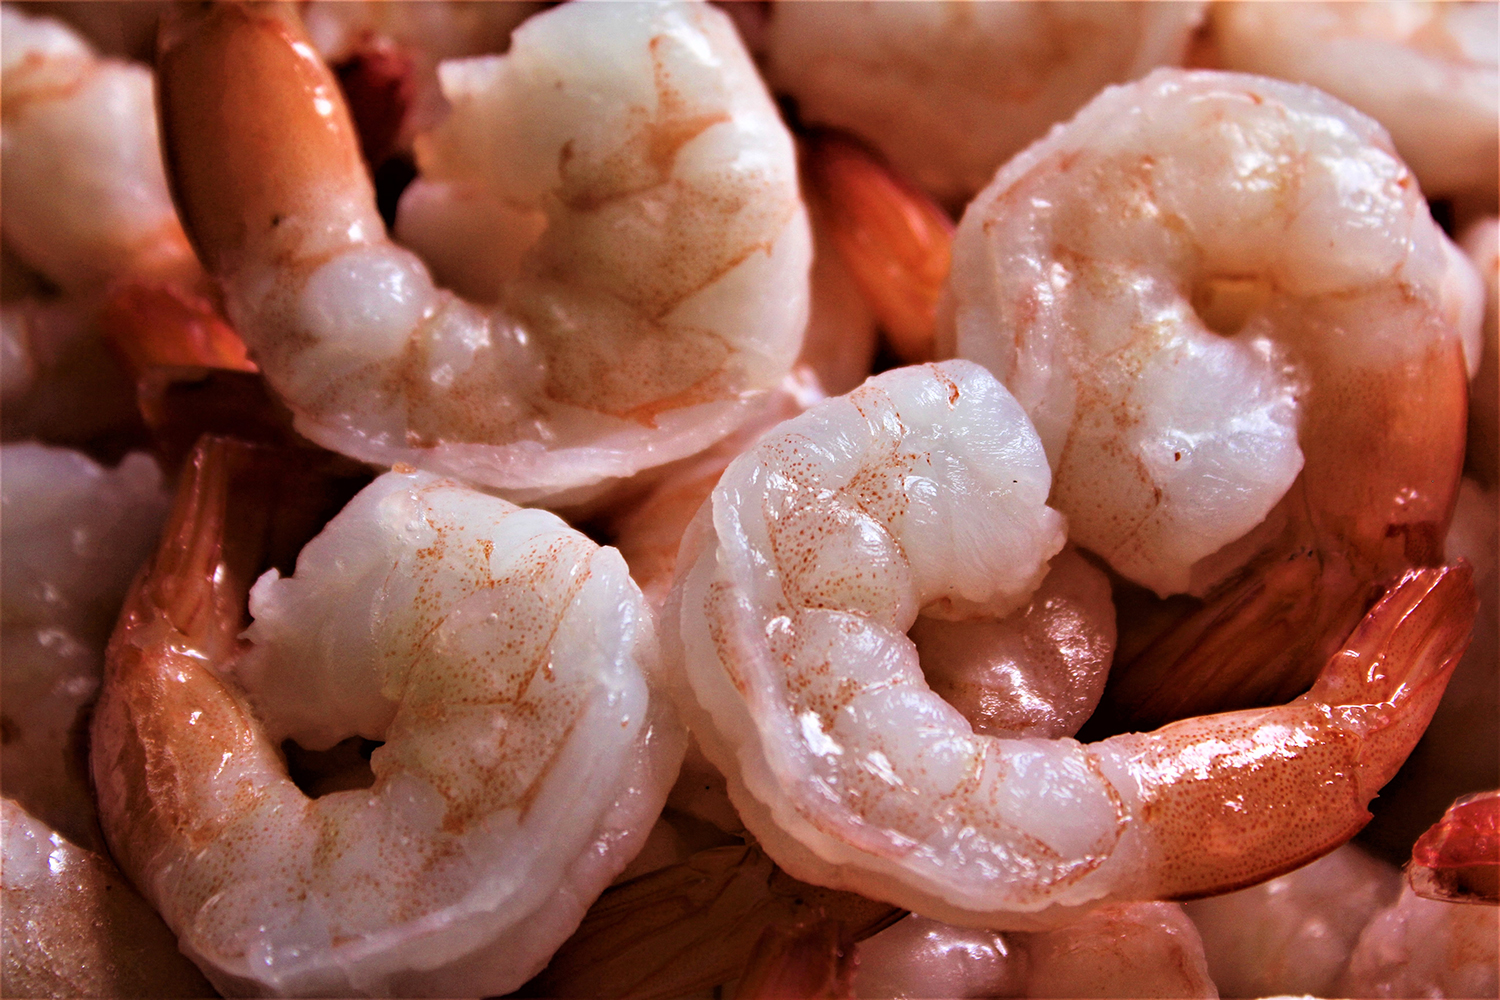 Evaluación del riesgo de transmisión en camarones cocidos infectados con  WSSV - Responsible Seafood Advocate